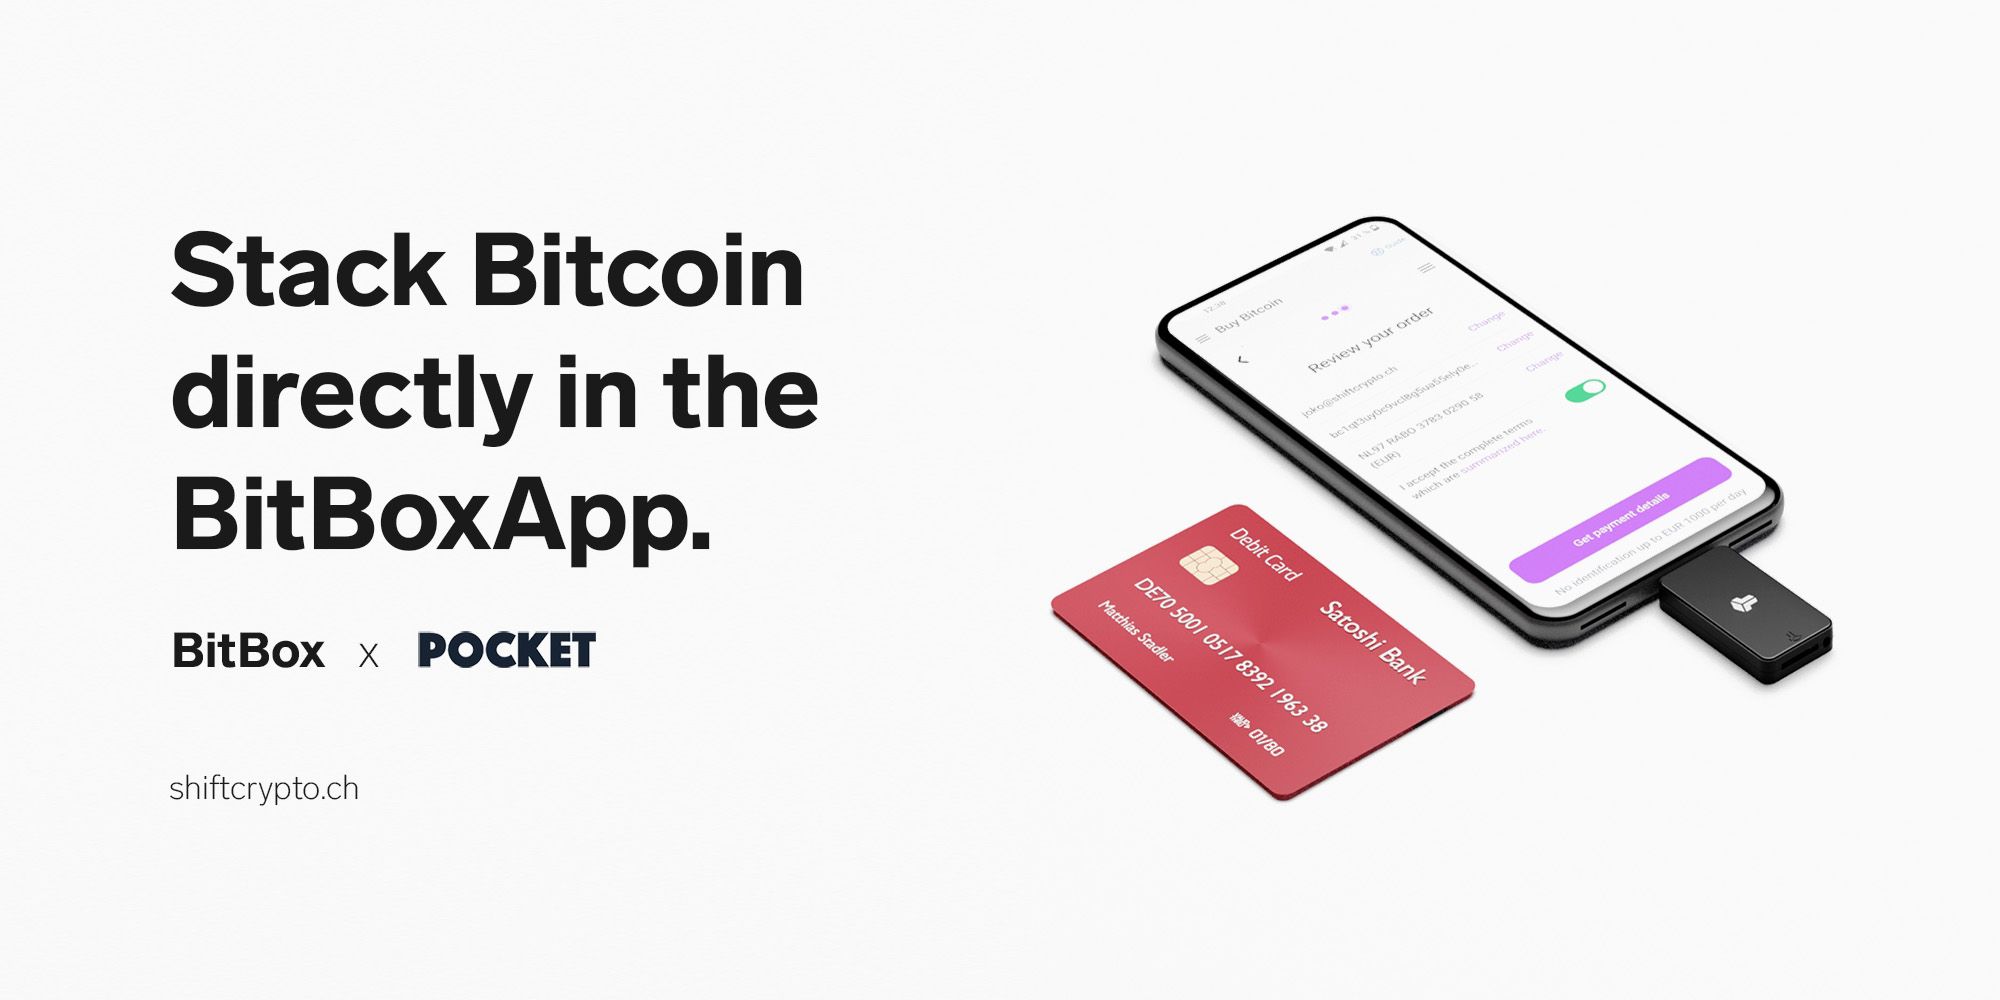 Announcing a new partnership: BitBox + Pocket Bitcoin